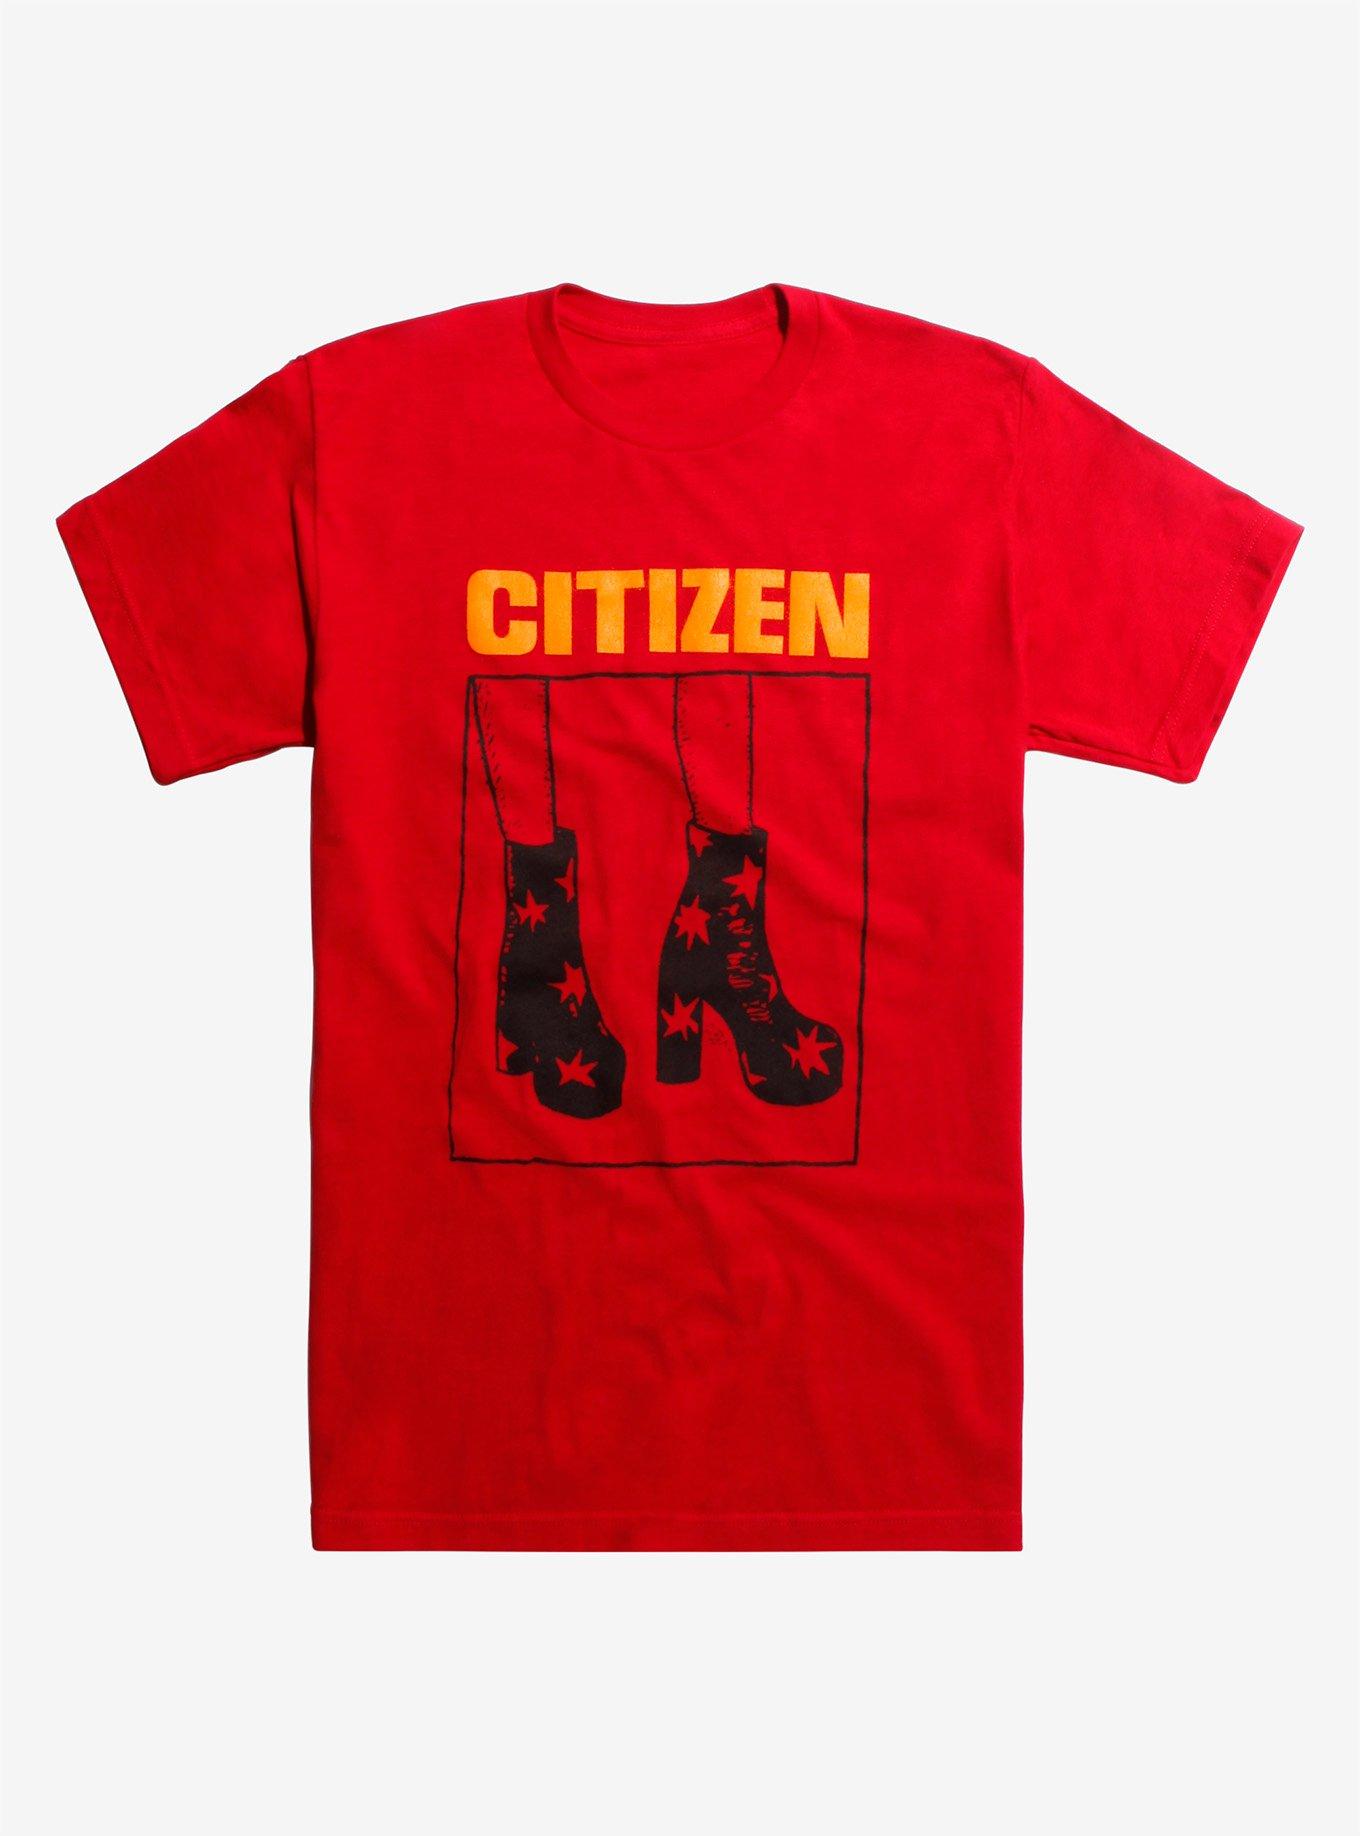 Citizen Boots T-Shirt | Hot Topic